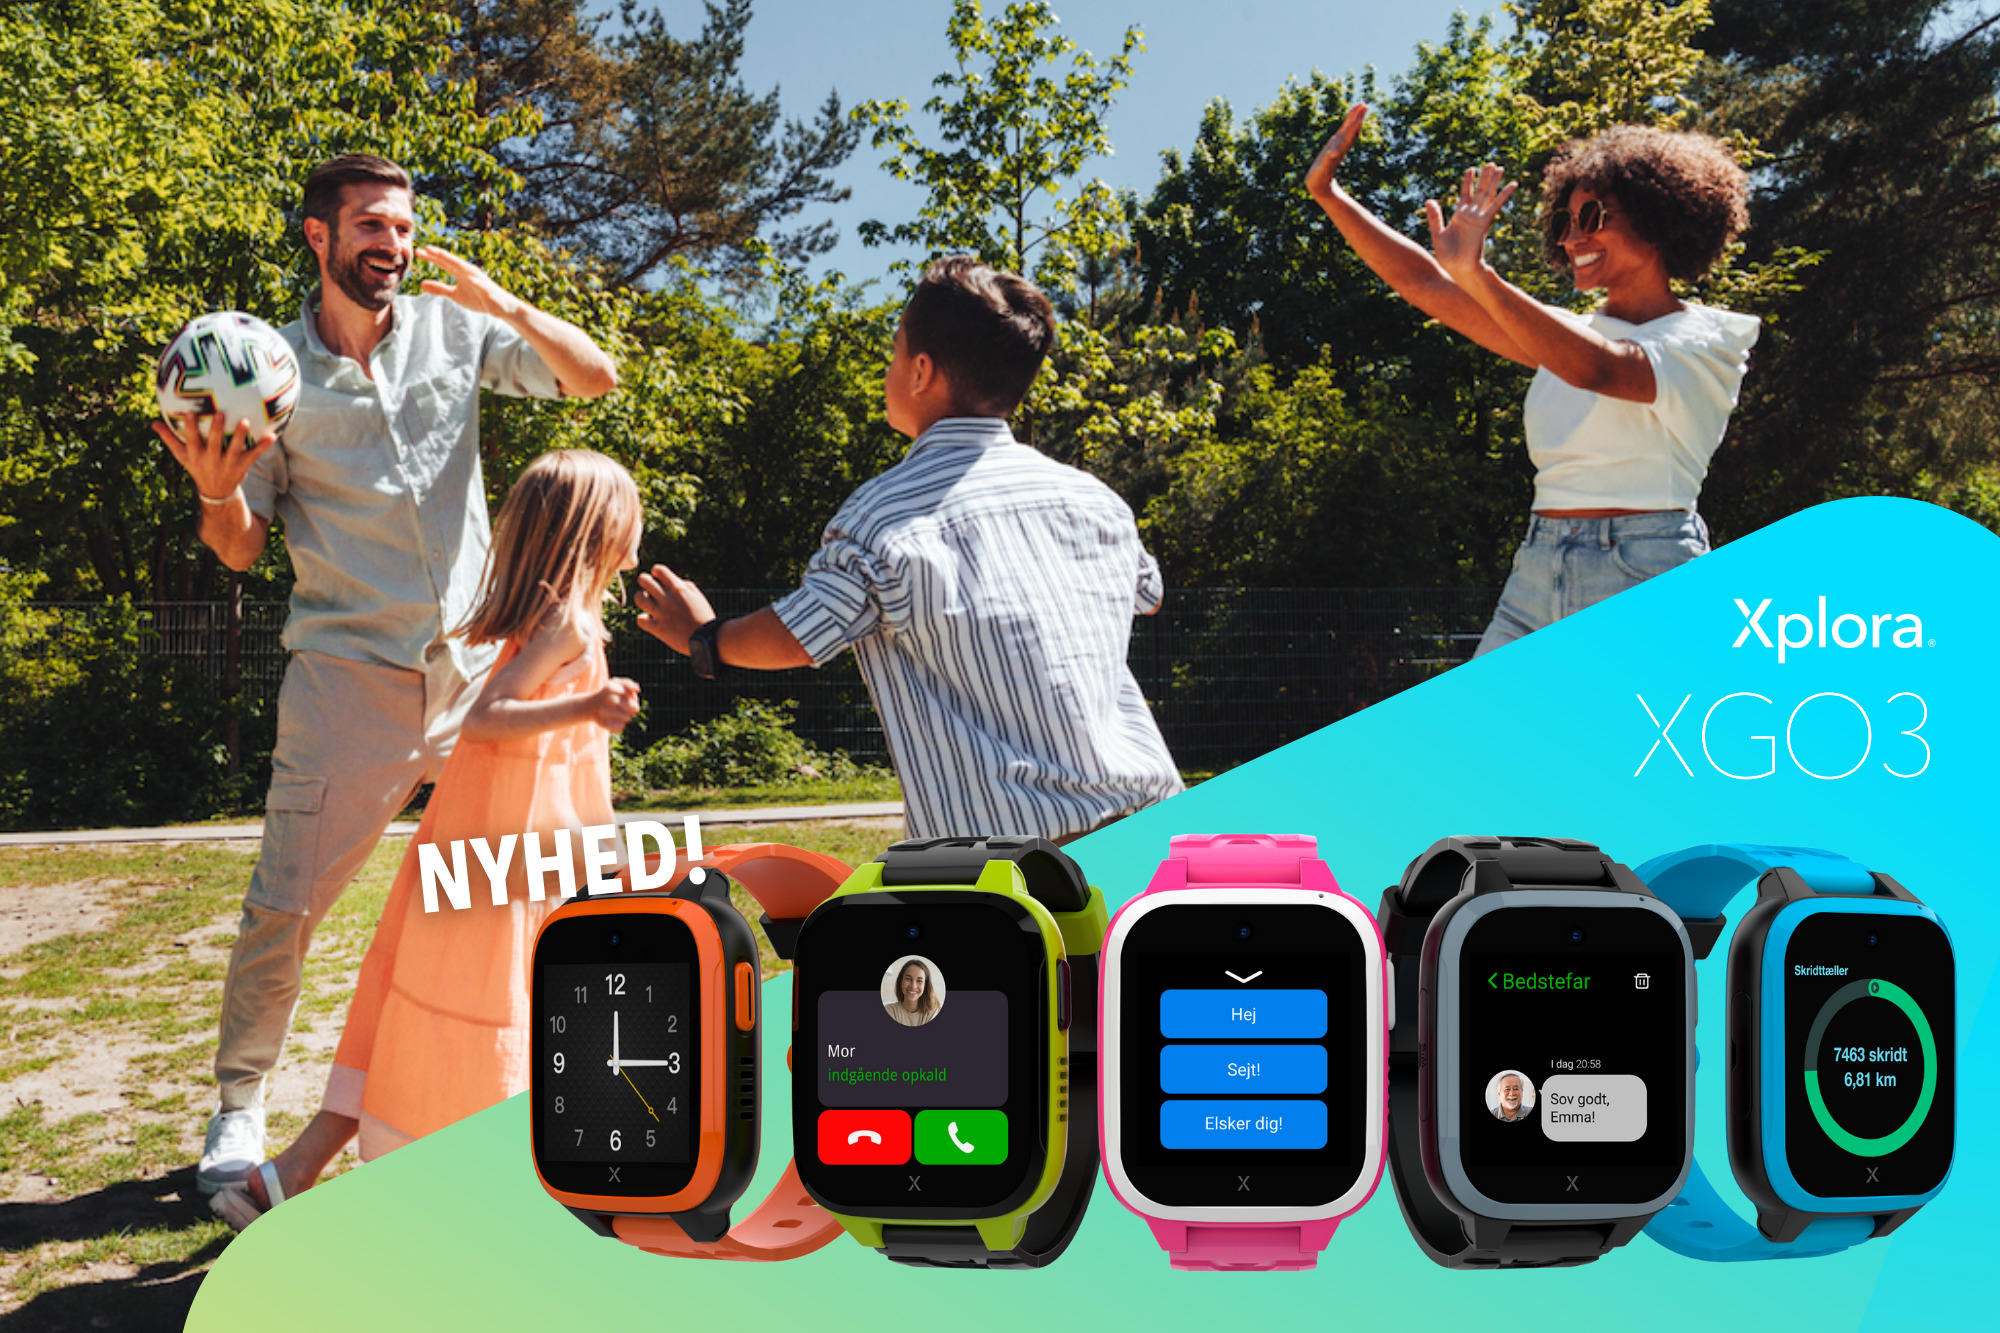 NYHED! Xplora lancerer nyt XGO3 smartwatch til børn